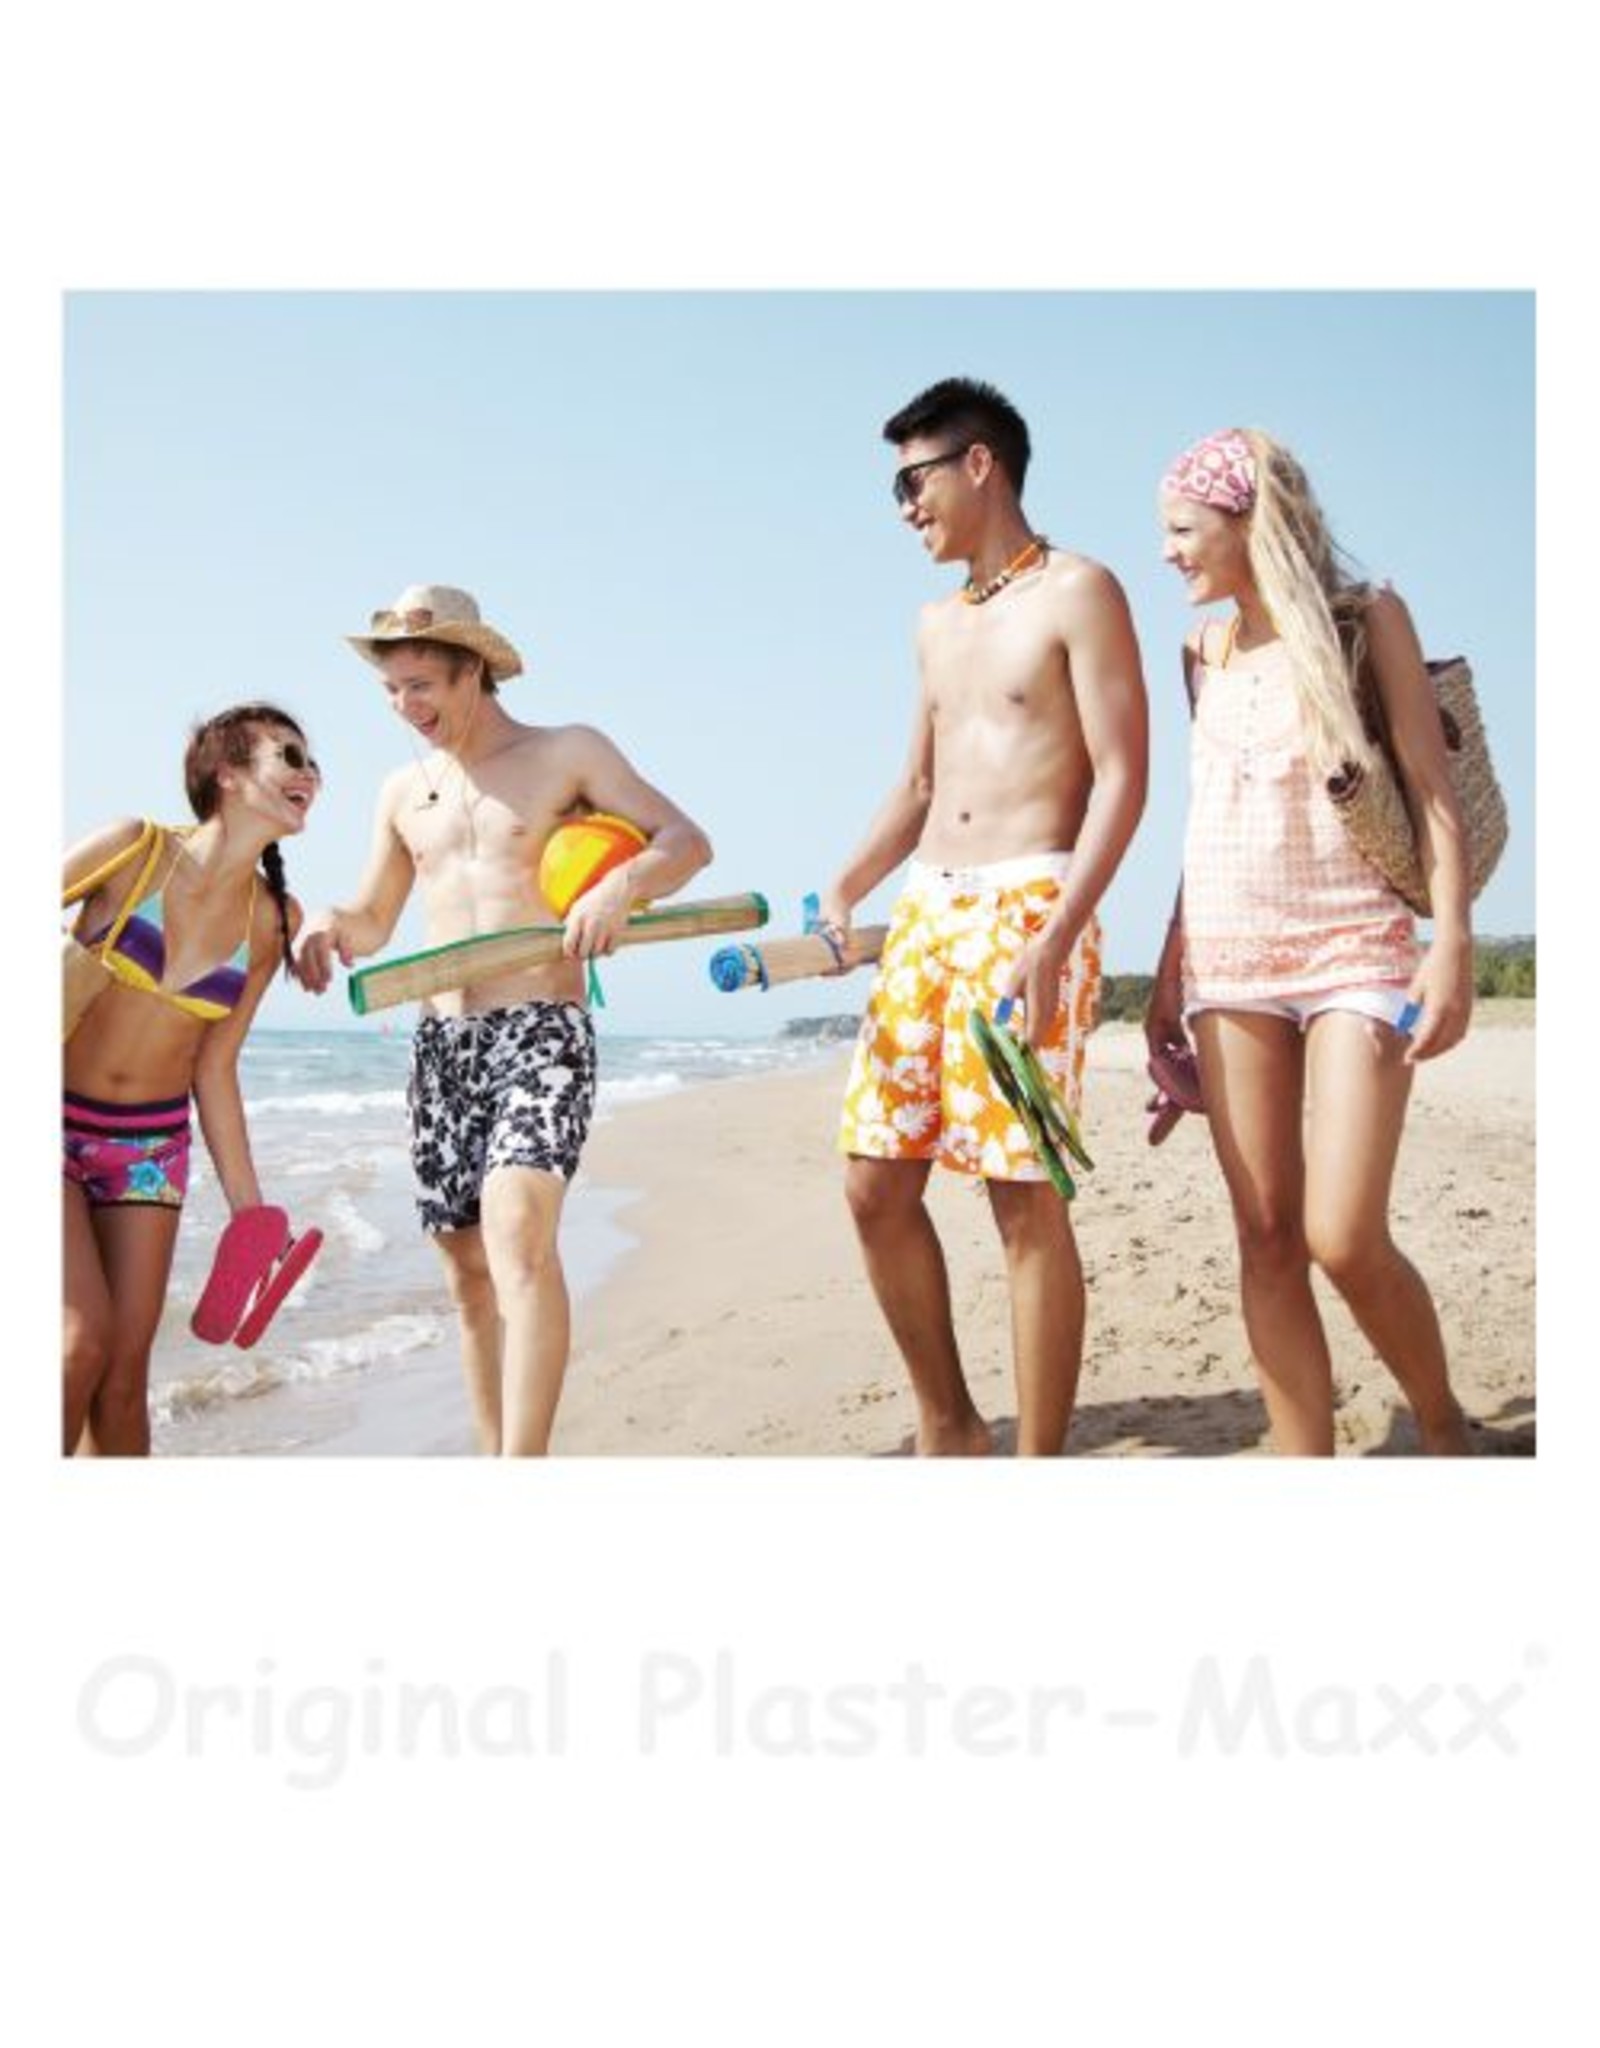 Plaster-Maxx Plaster-Maxx - Pink